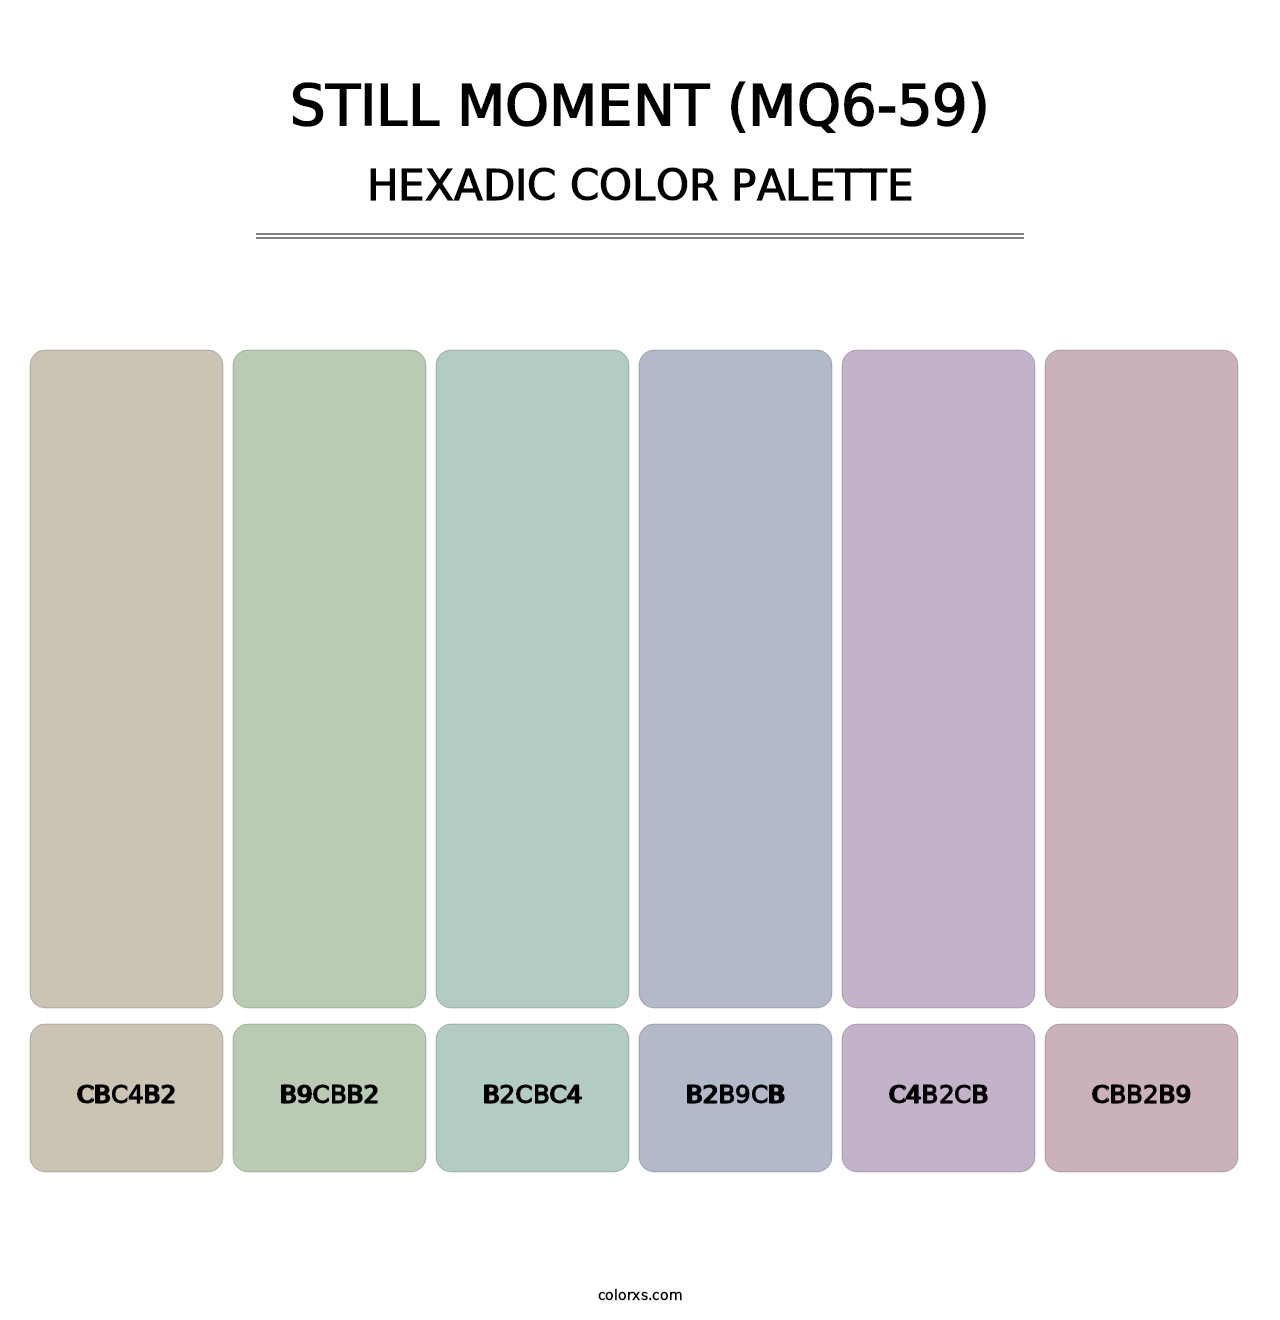 Still Moment (MQ6-59) - Hexadic Color Palette